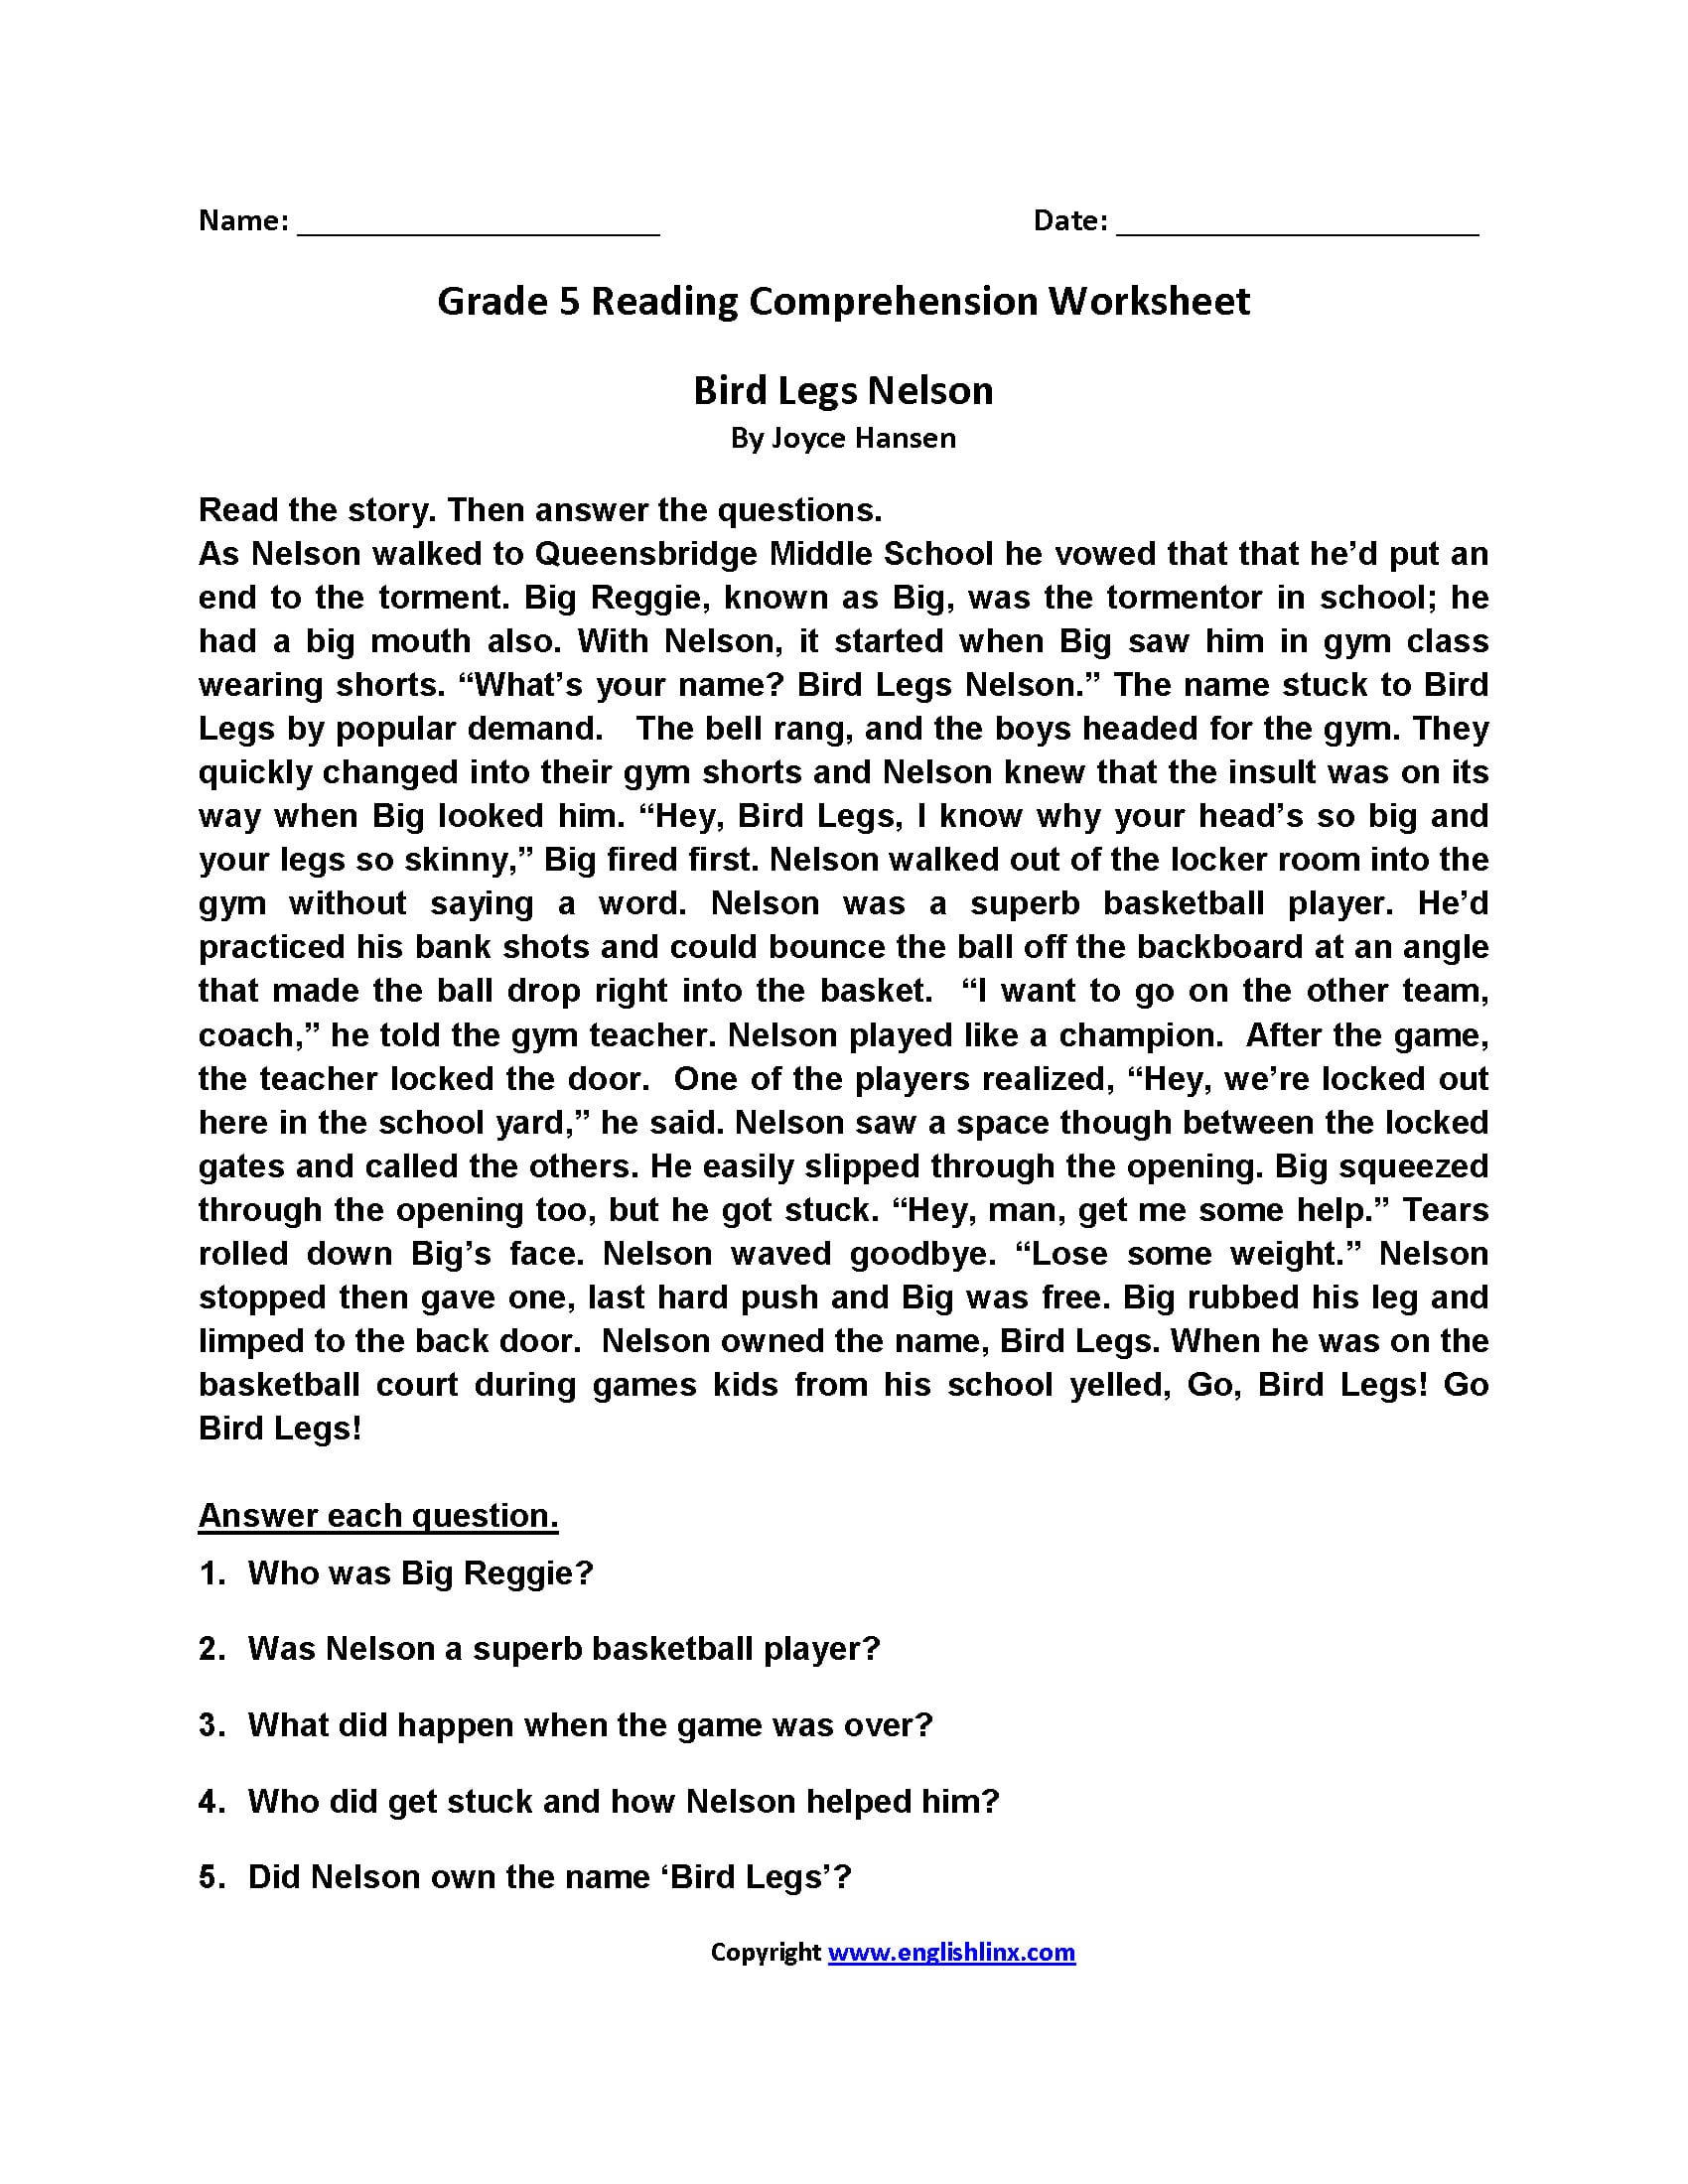 Grade 5 Reading Comprehension Worksheets Pdf | db-excel.com